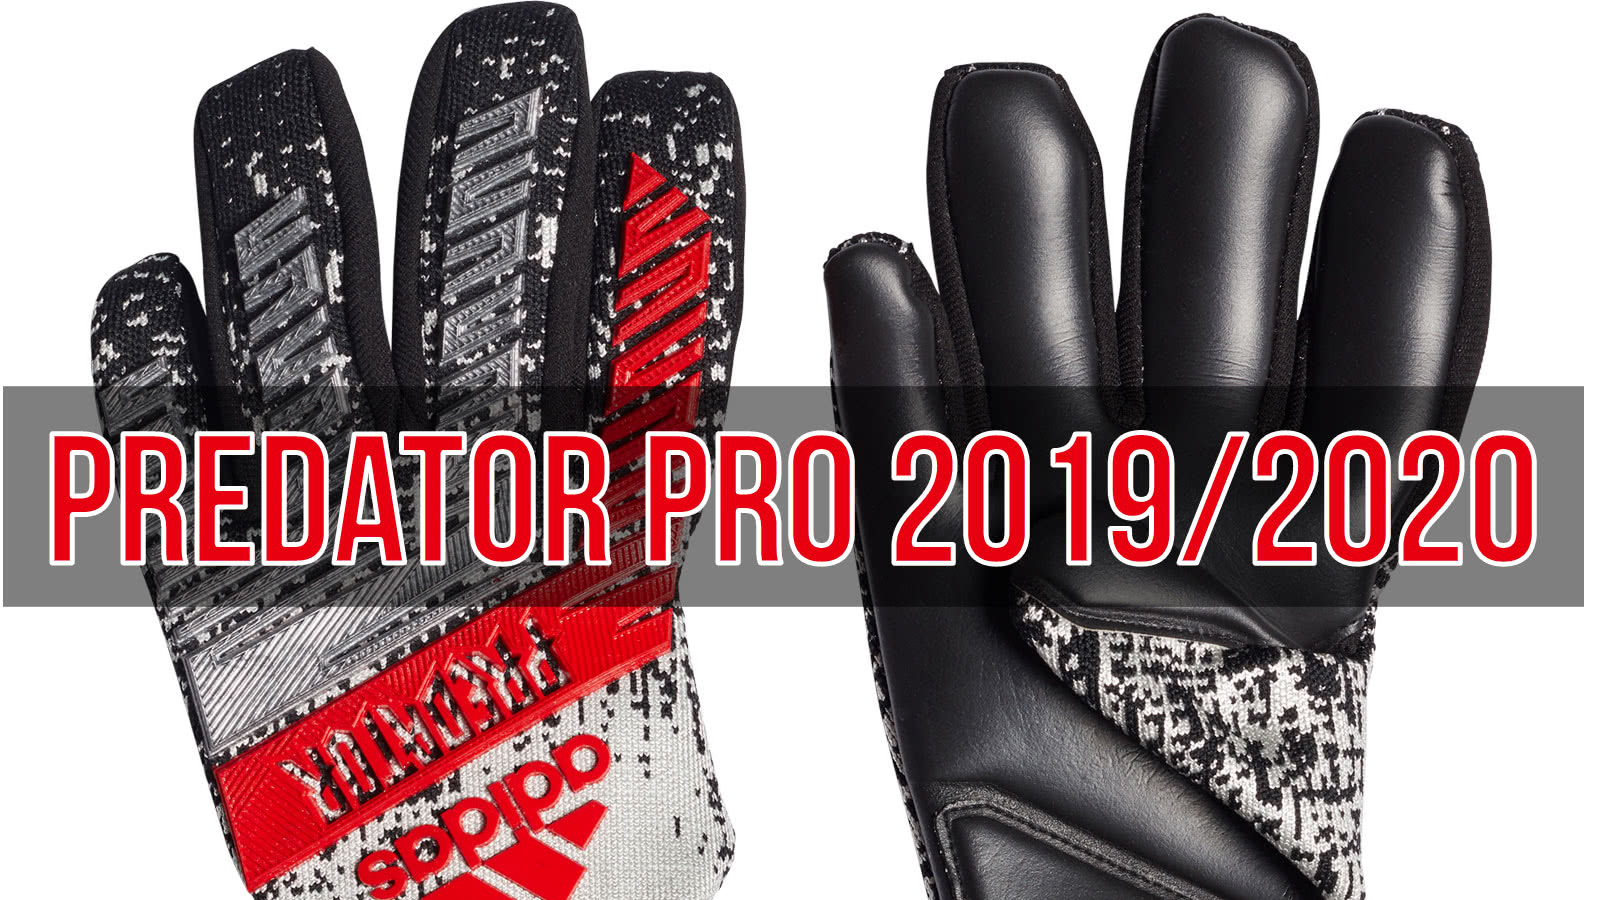 Die adidas Predator Pro 2019 2020 Torwarthandschuhe von Manuel Neuer und Marc Andre ter Stegen